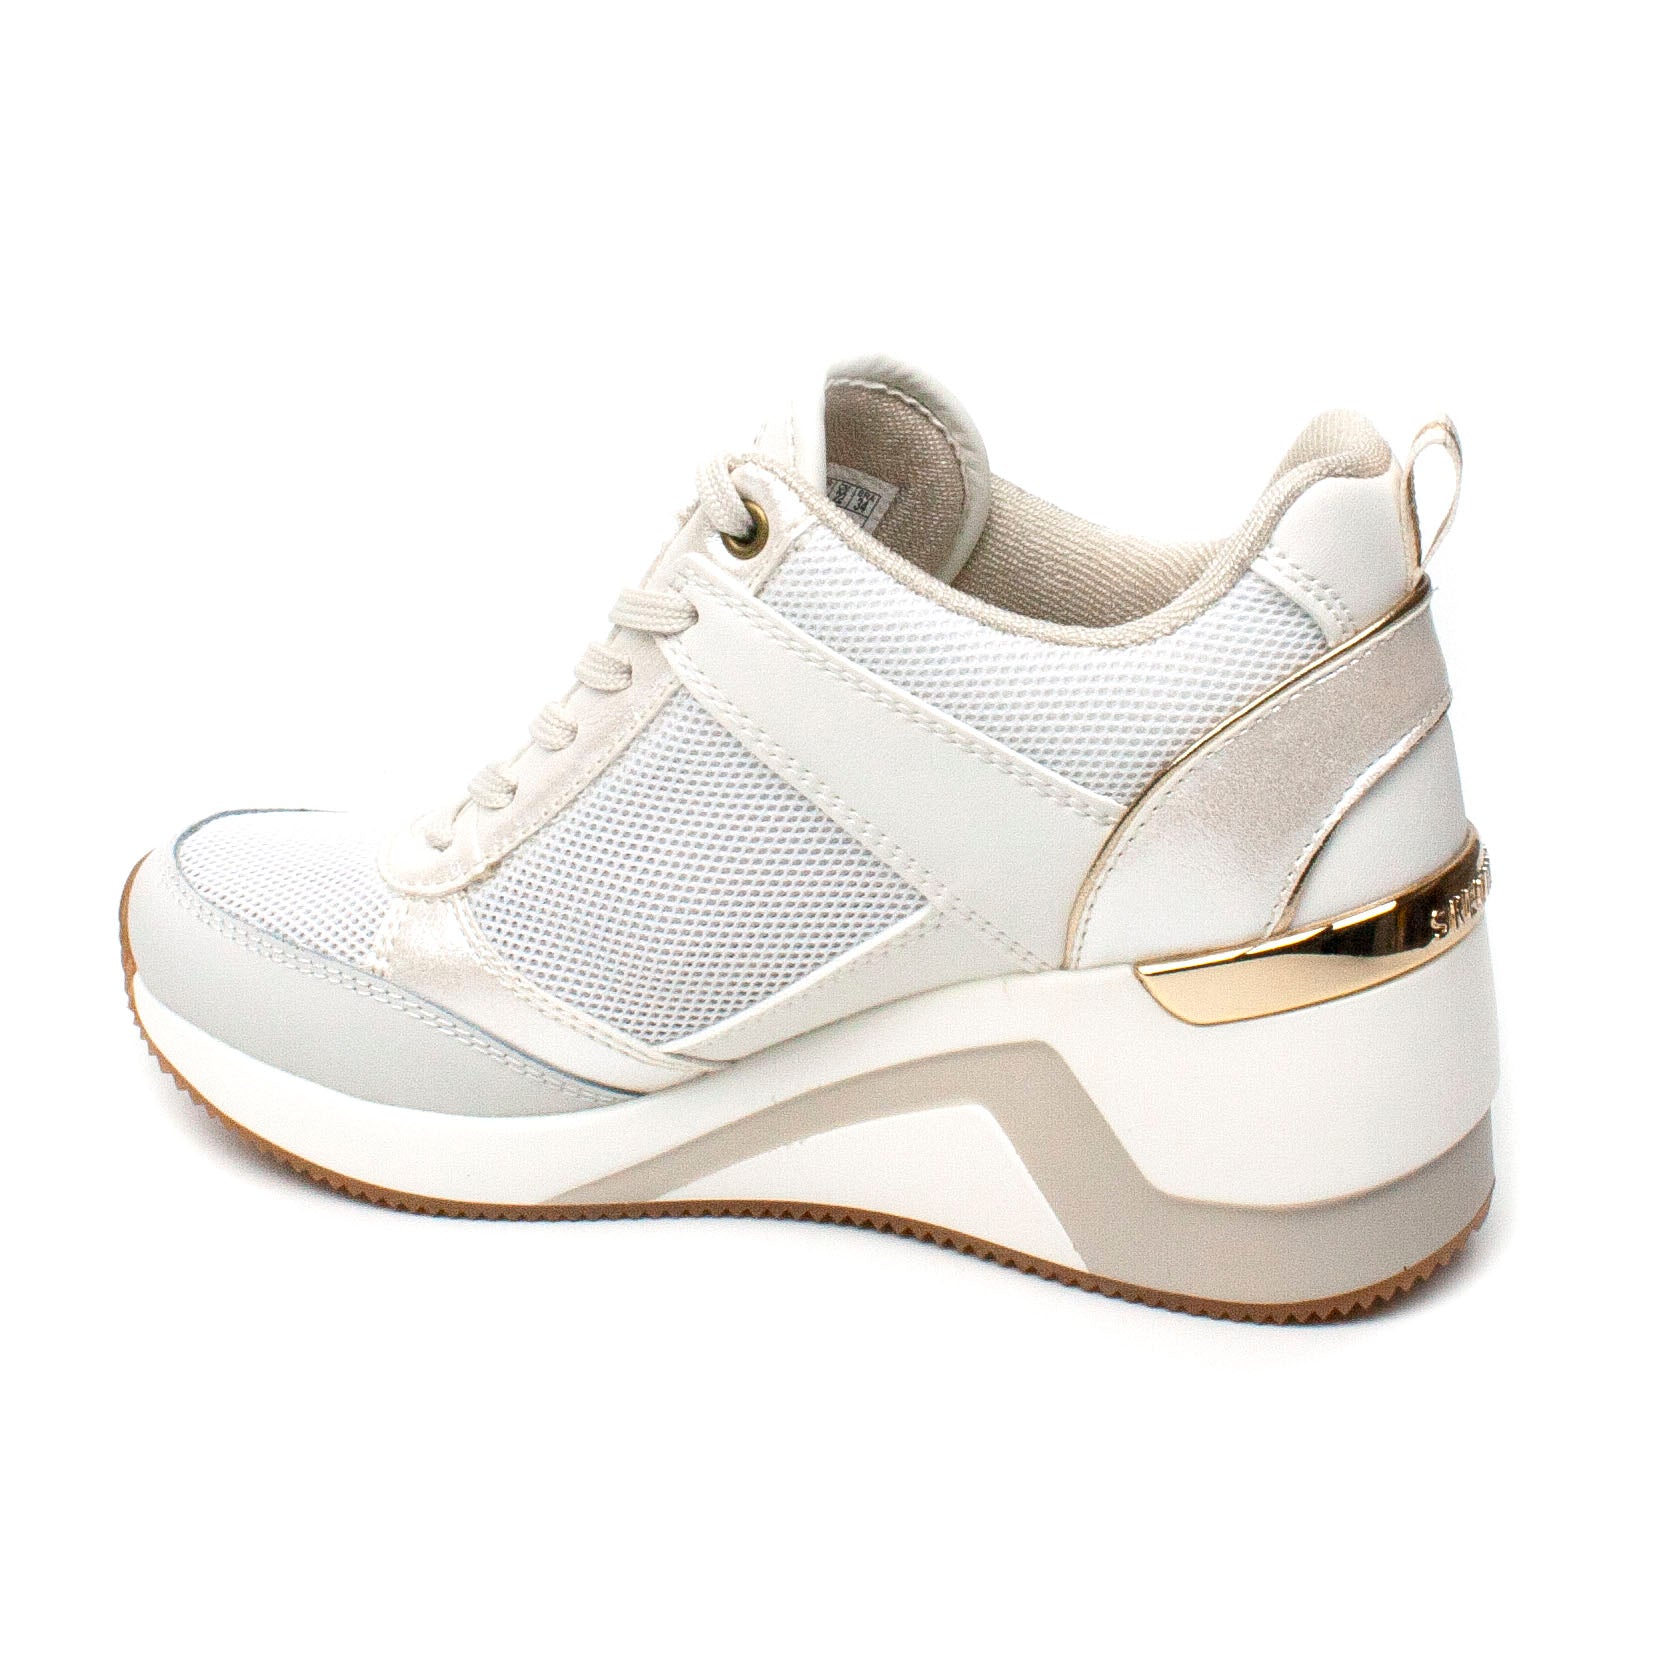 Skechers Pantofi dama sport 74391 alb ID1919-ALB